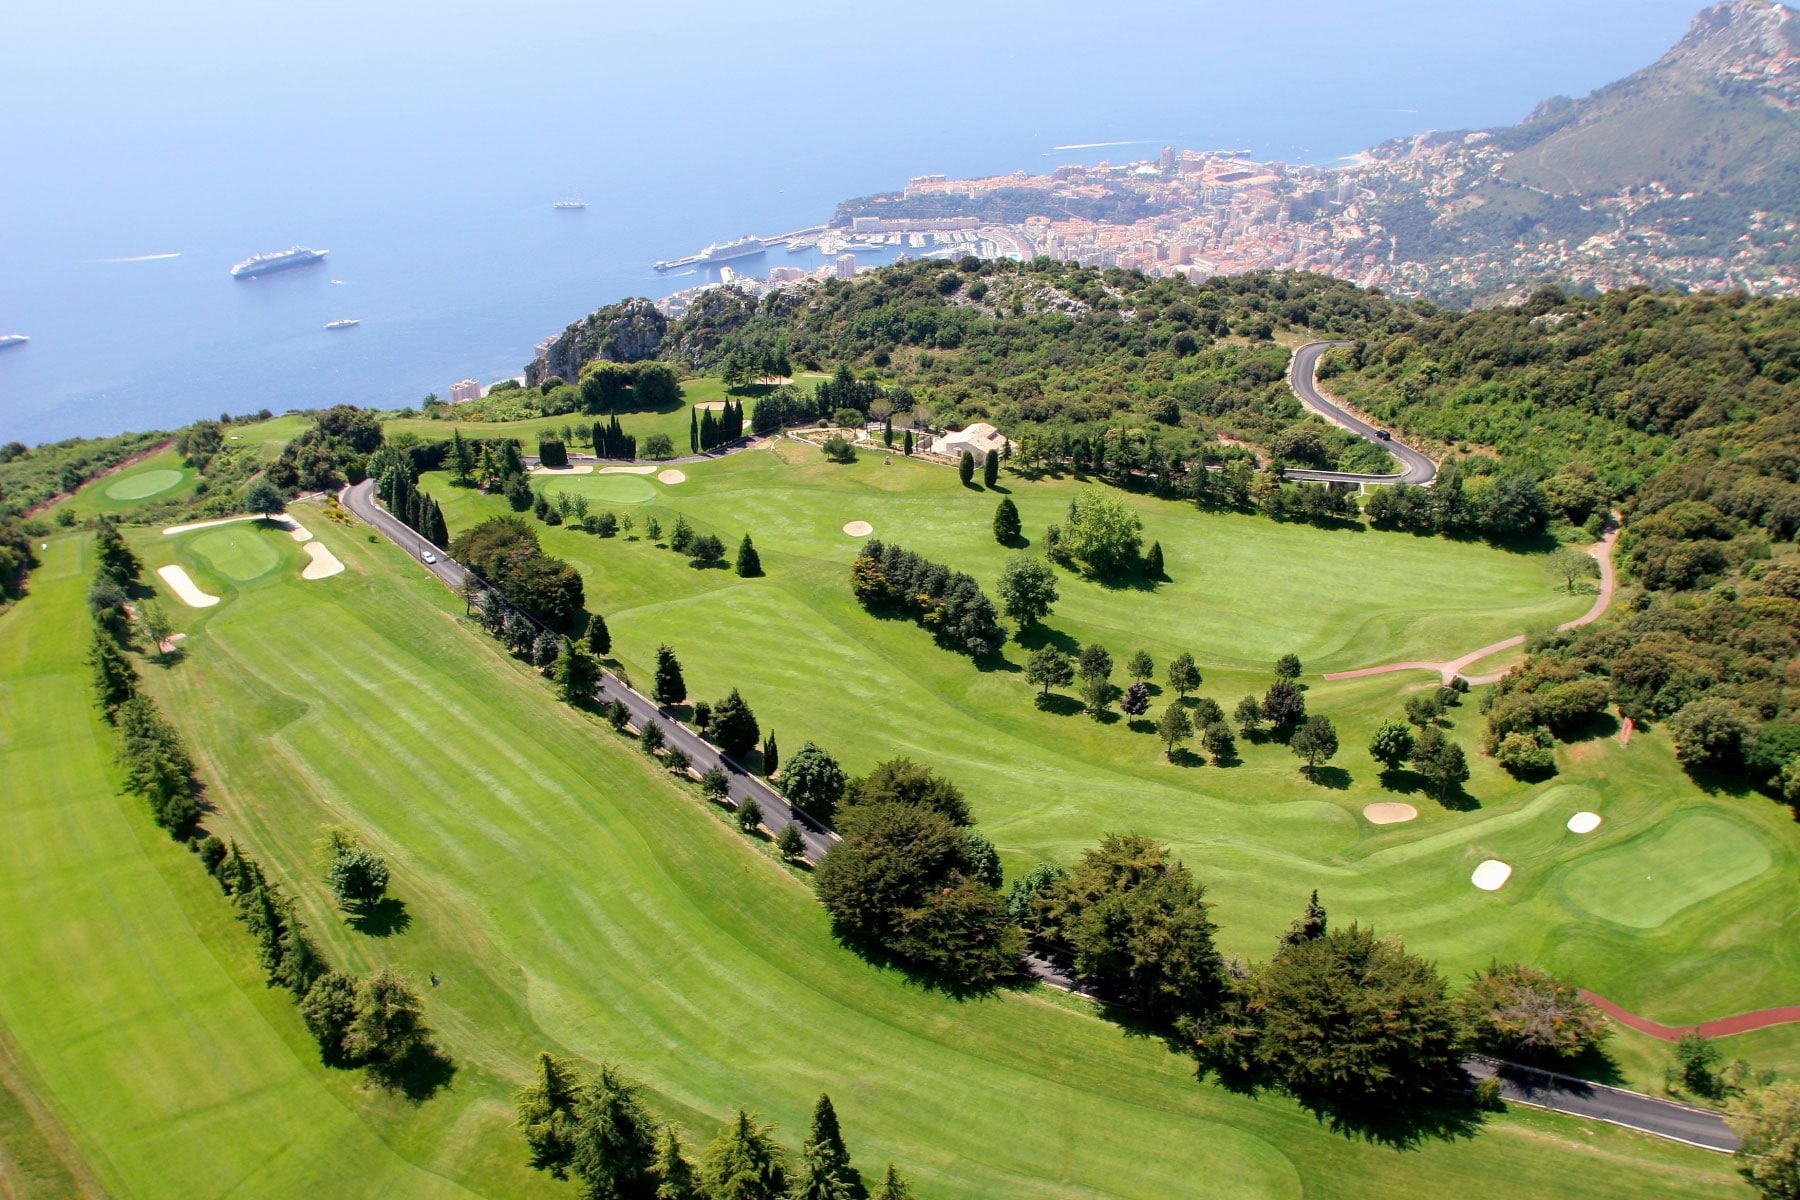 MP Golf Monte carlo Monaco cote azur mer